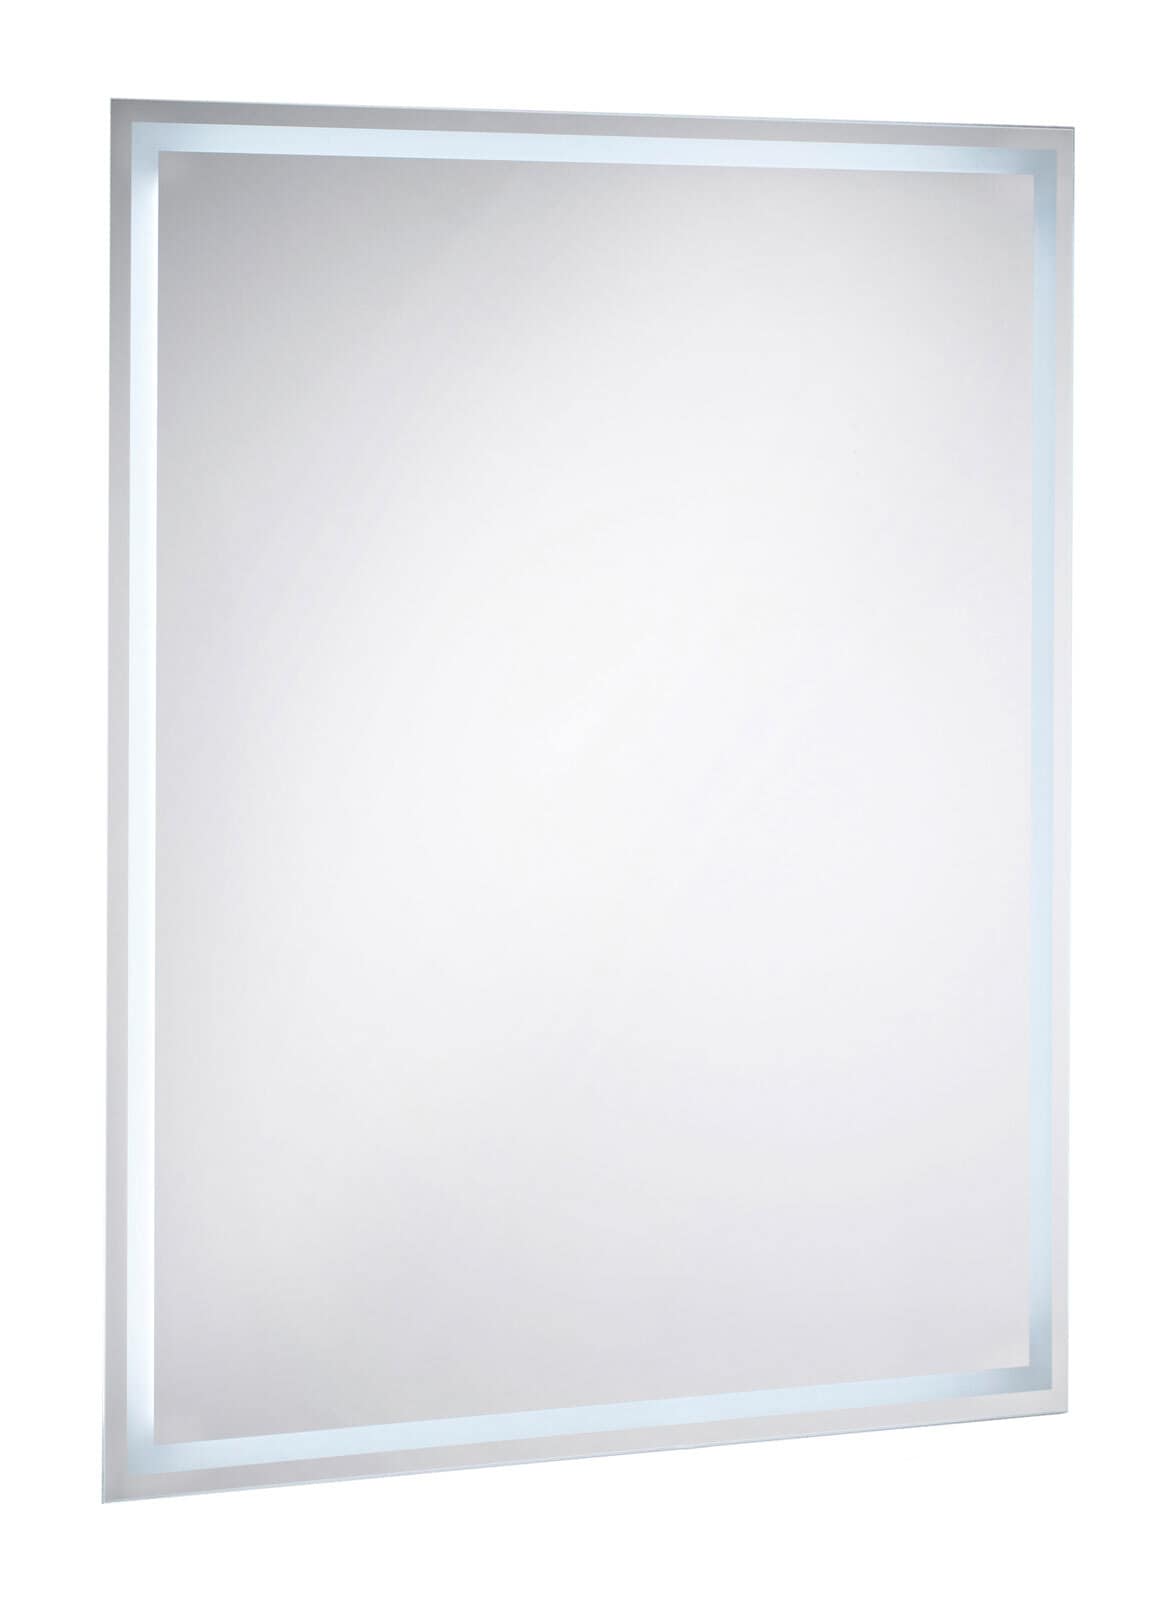 CASAVANTI Badspiegel mit 120 LED-Lampen 50 x 70 cm Spiegelglas